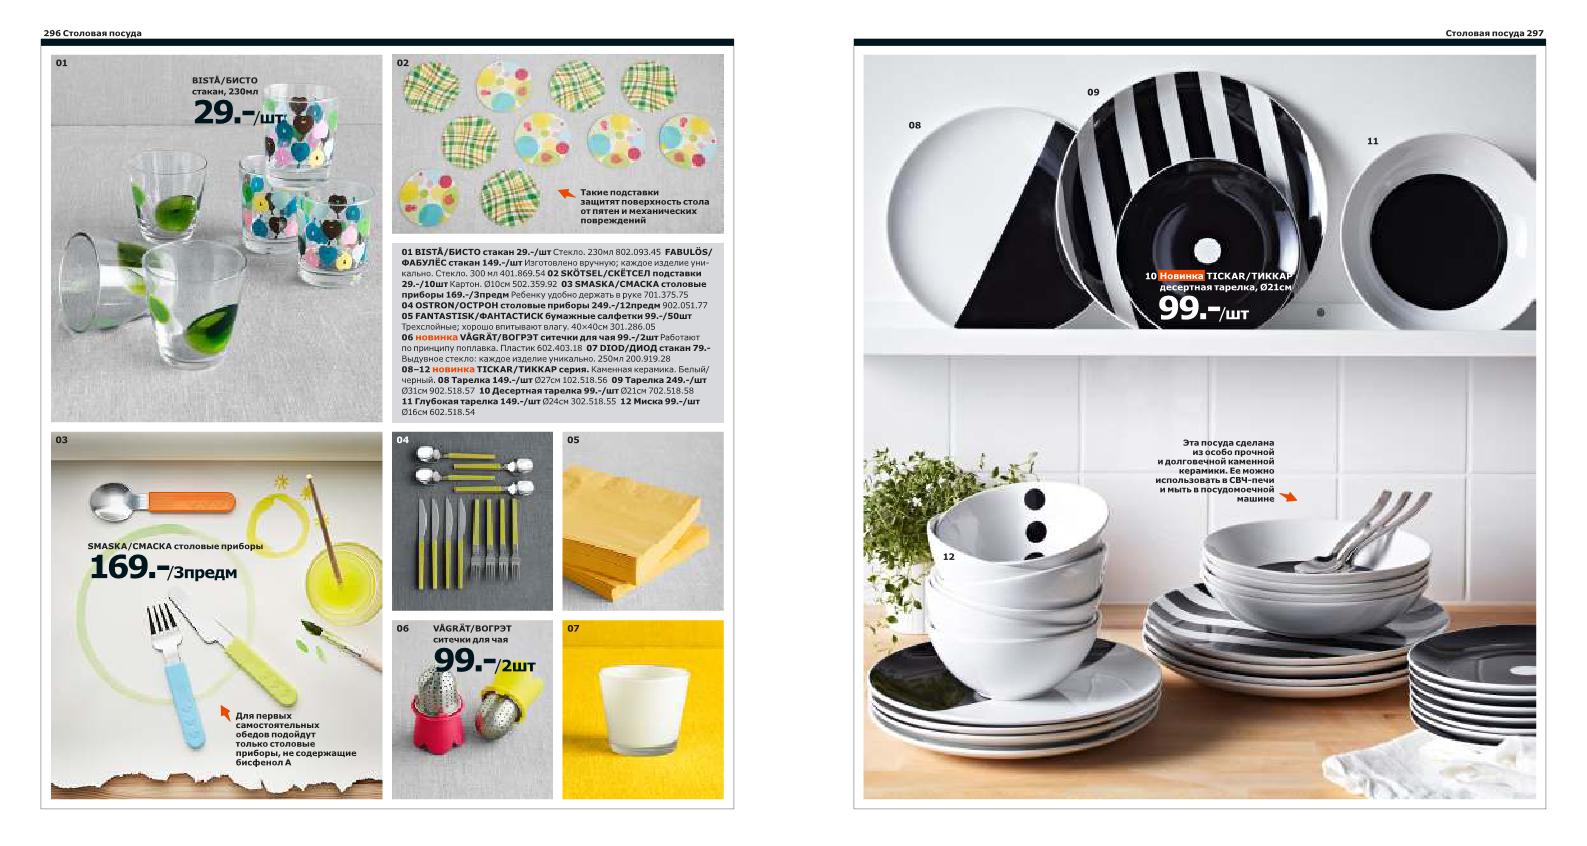 Обзор каталога IKEA 2014